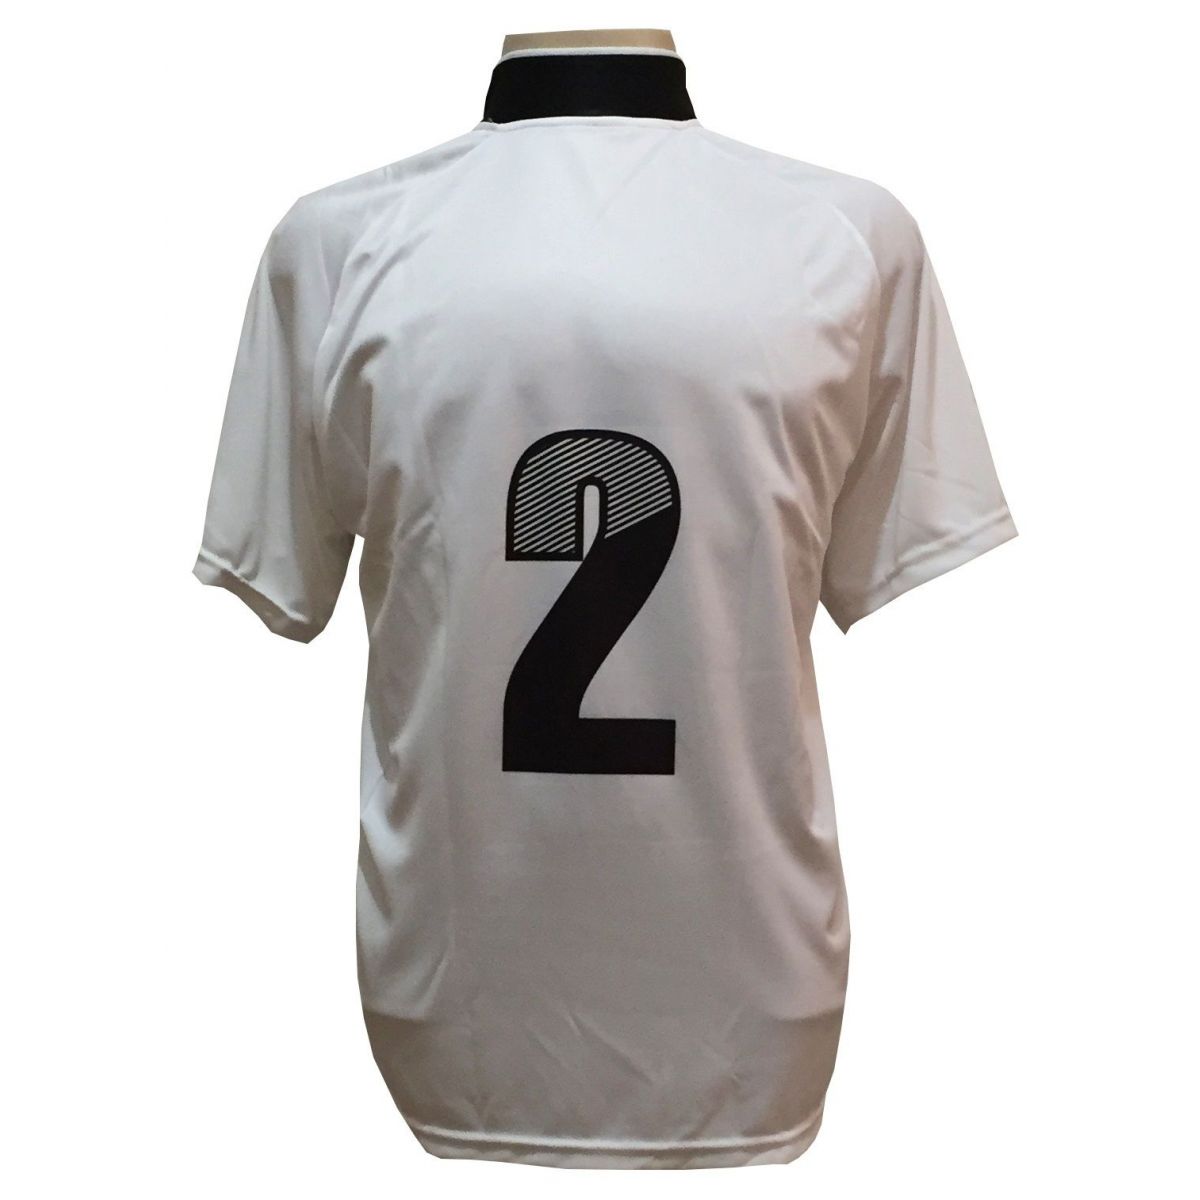 Uniforme Esportivo com 12 camisas modelo Milan Branco/Preto + 12 calções modelo Copa + 1 Goleiro + Brindes